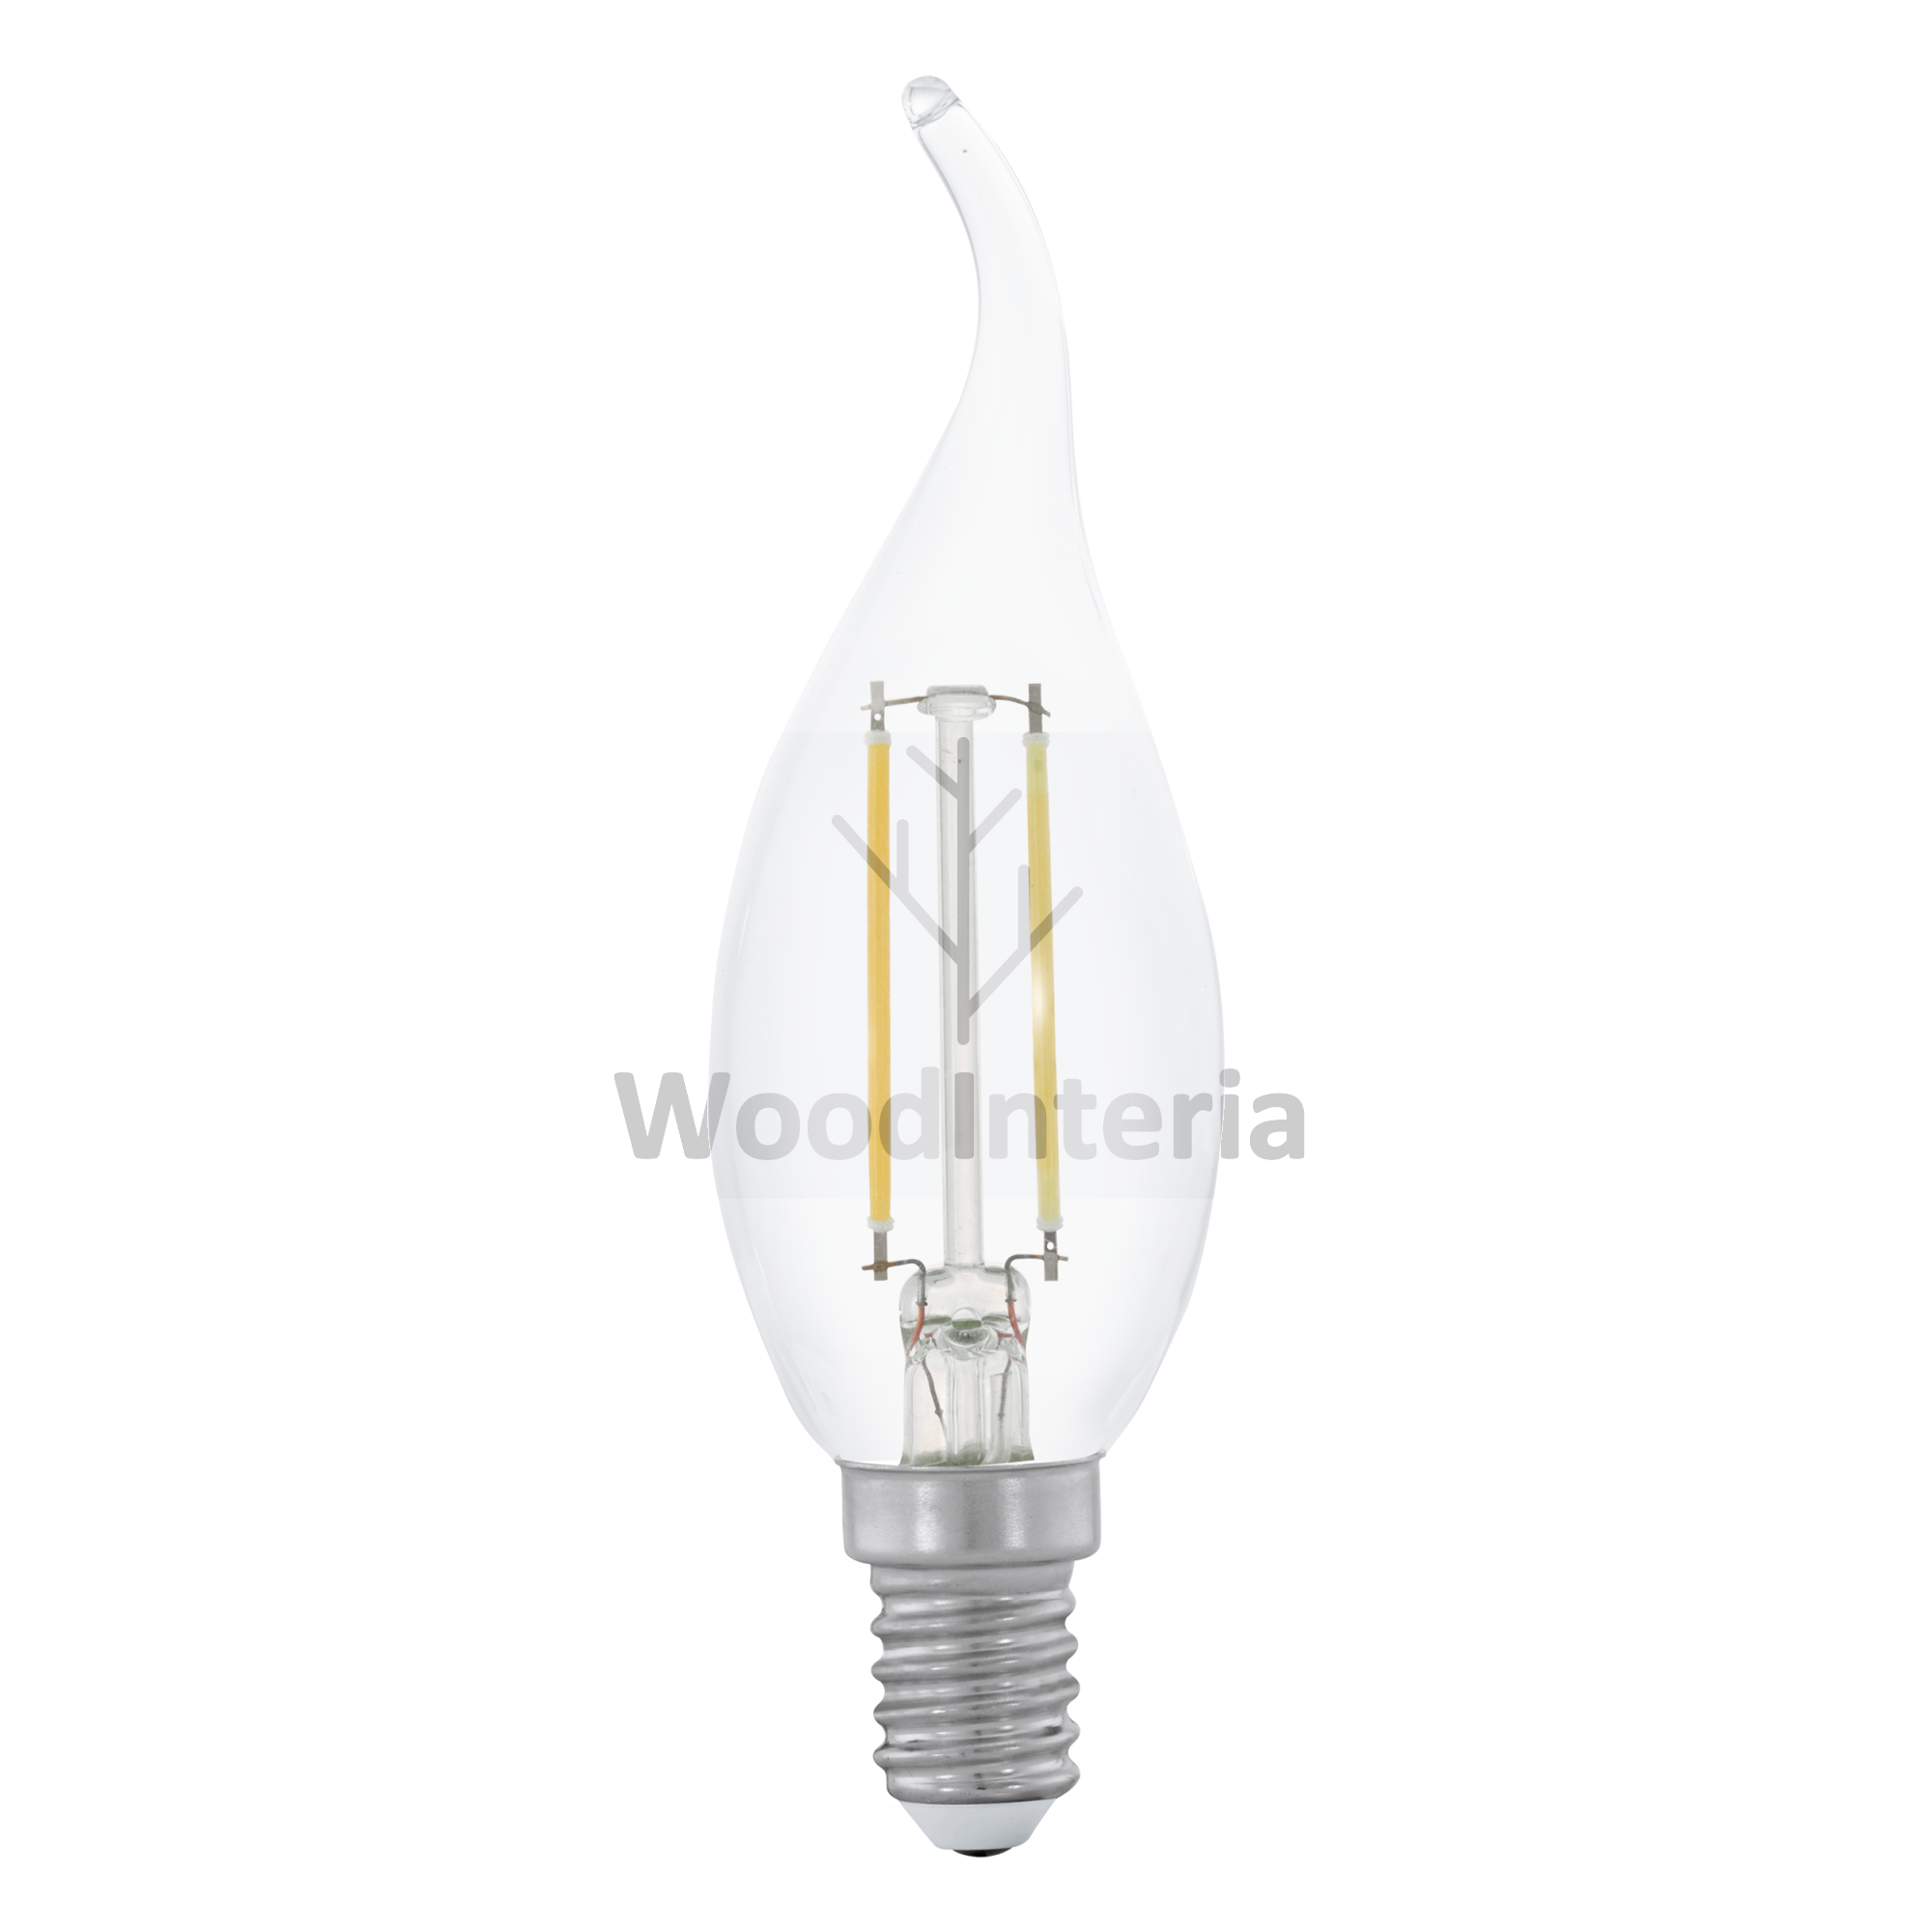 фото лампочка clean bulb #8 в скандинавском интерьере лофт эко | WoodInteria